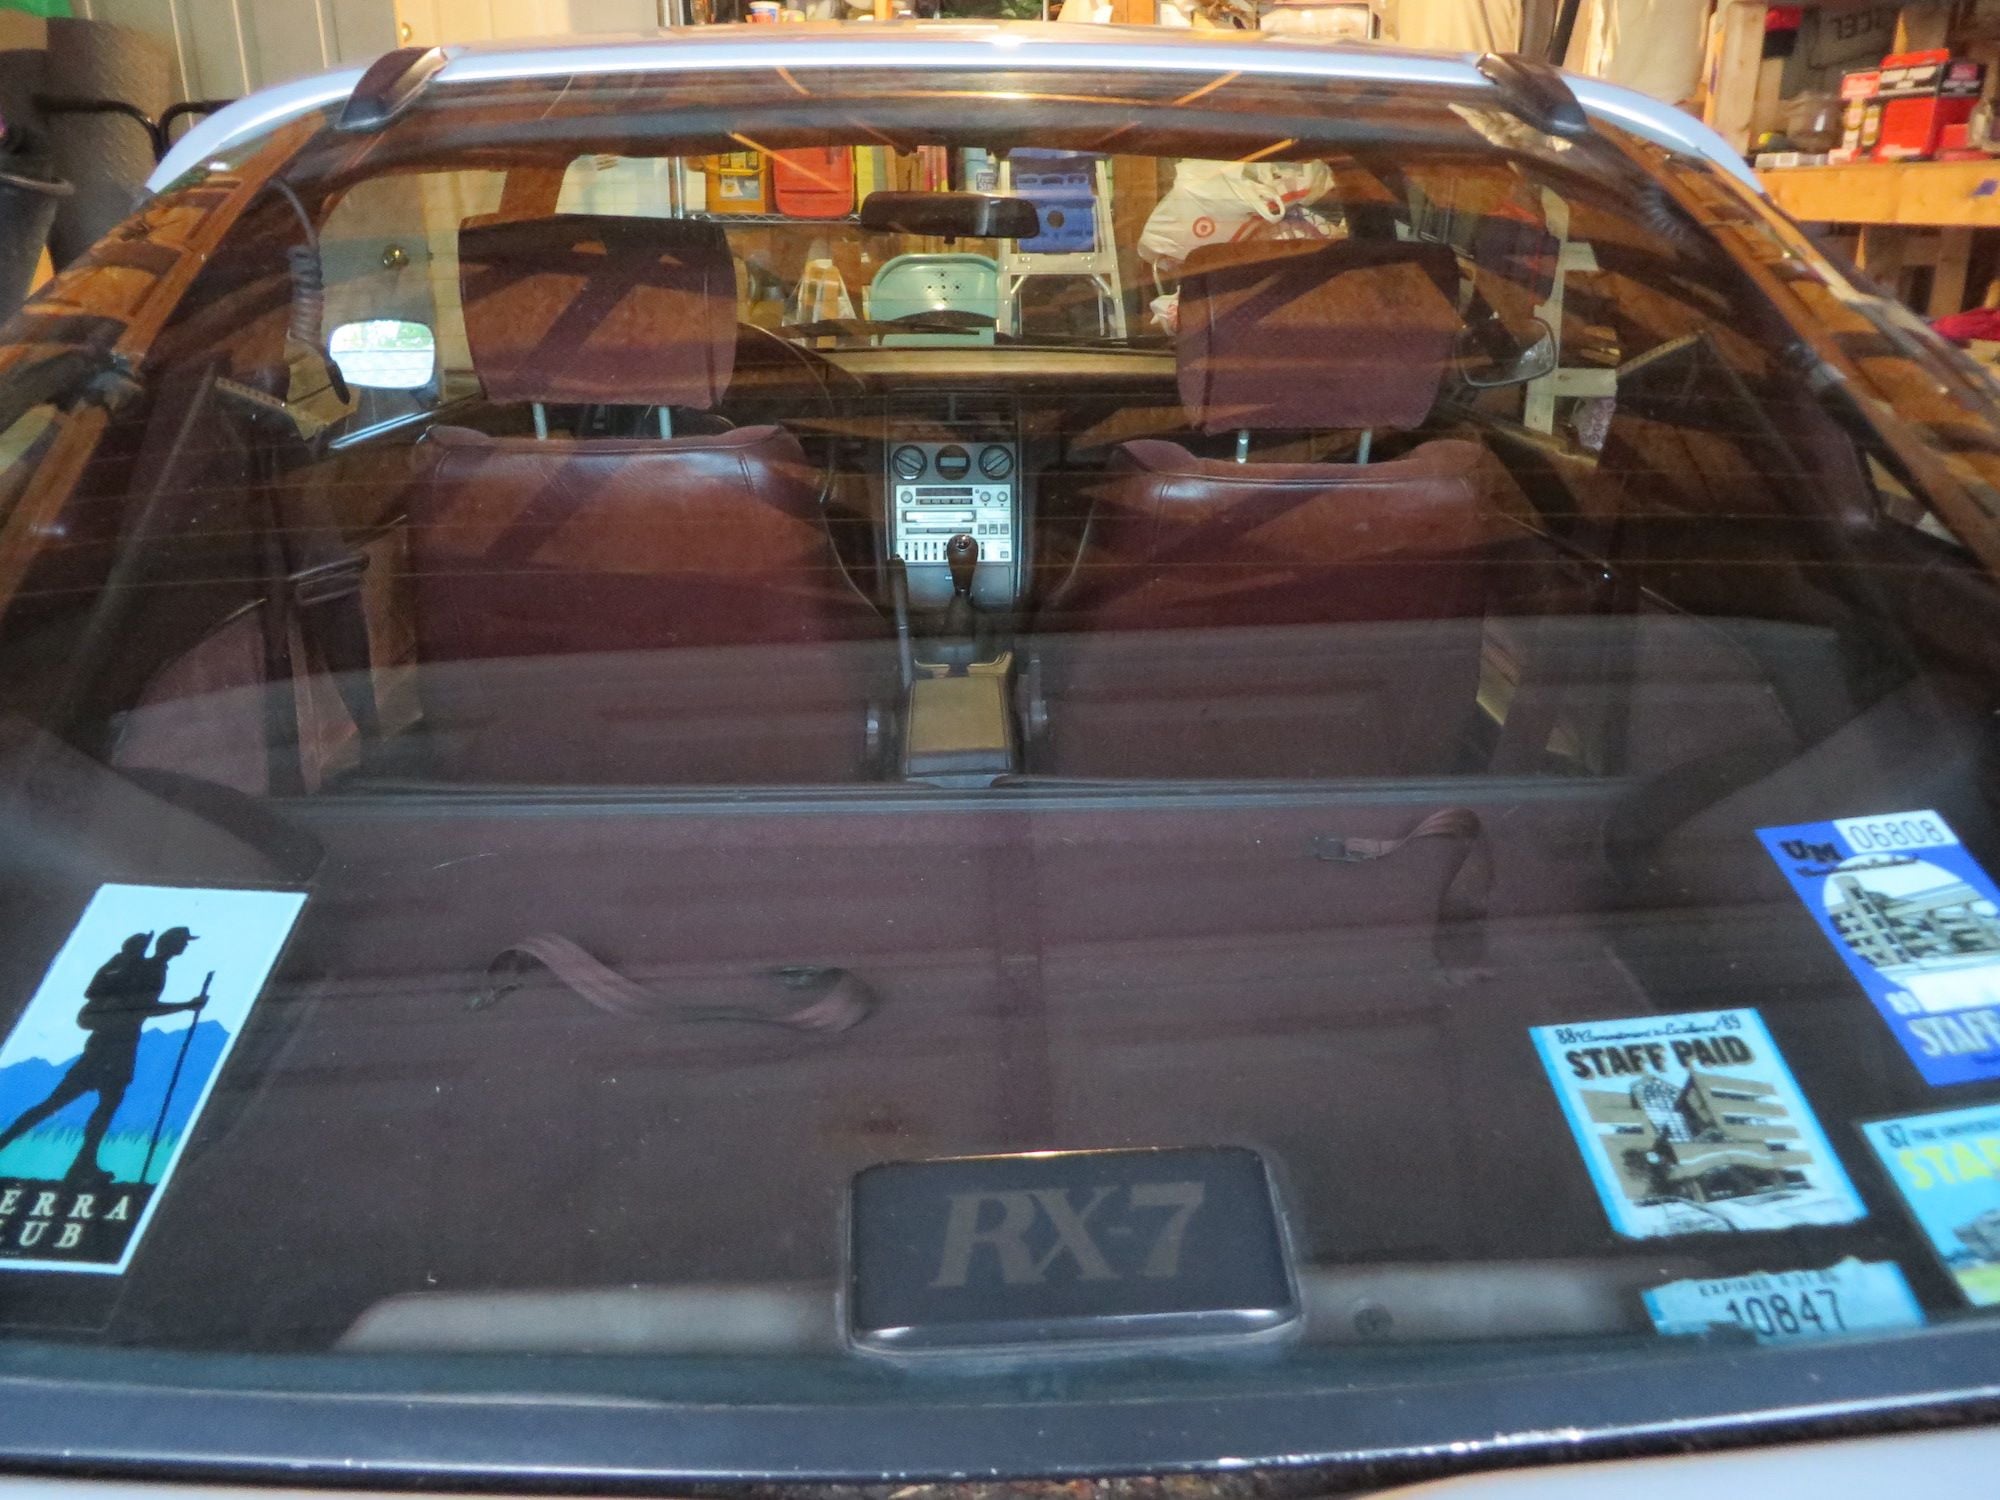 1985 Mazda RX-7 - '85 "Garage Find" for sale; last ran in 2013 - Used - VIN JM1FB3316F0909492 - 126,325 Miles - Other - 2WD - Manual - Hatchback - Silver - Detroit, MI 48216, United States